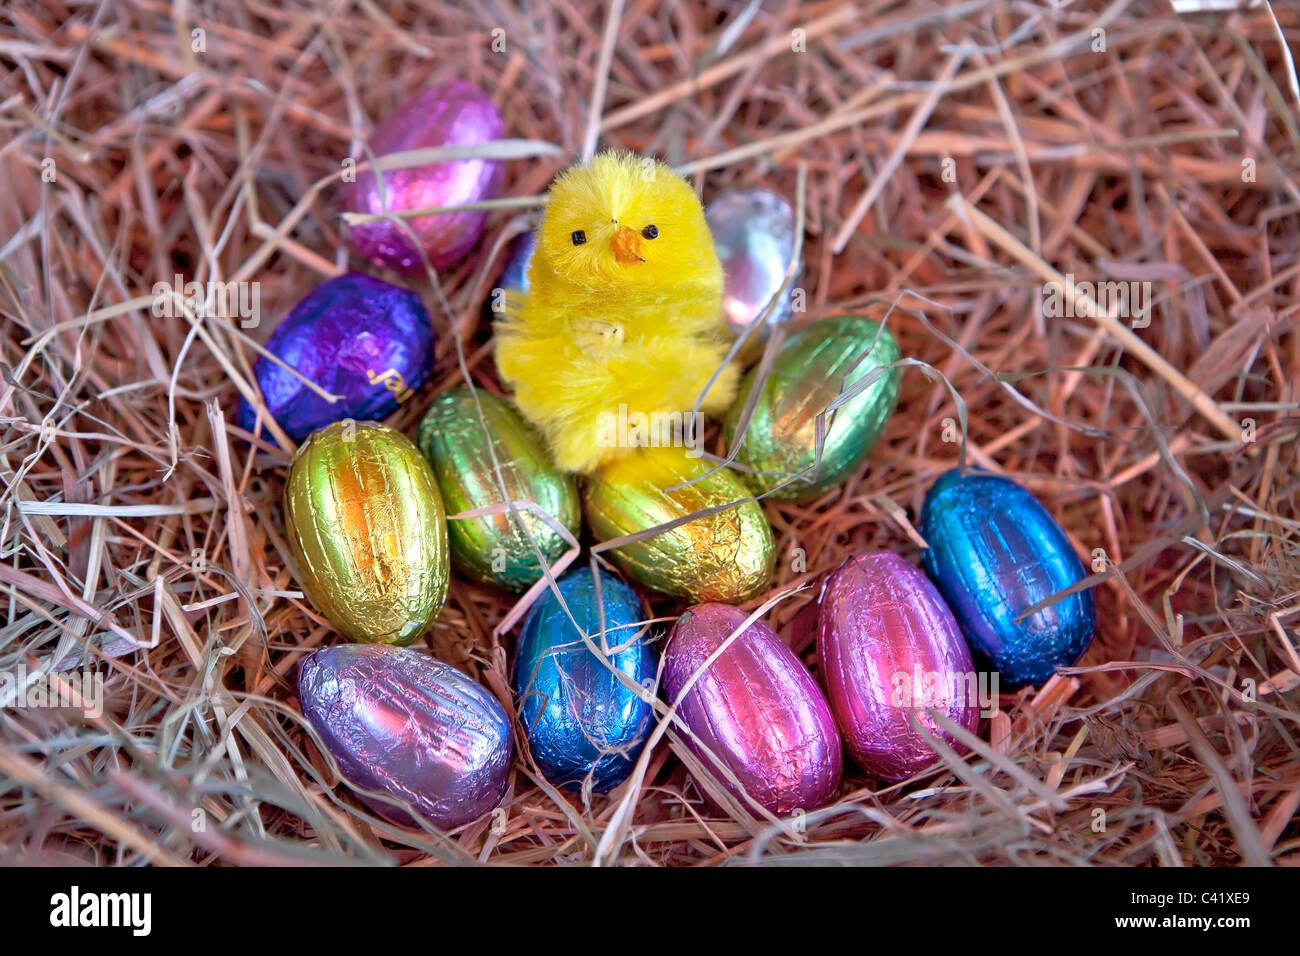 Huevo de Pascua con un polluelo en un nido de paja Foto de stock